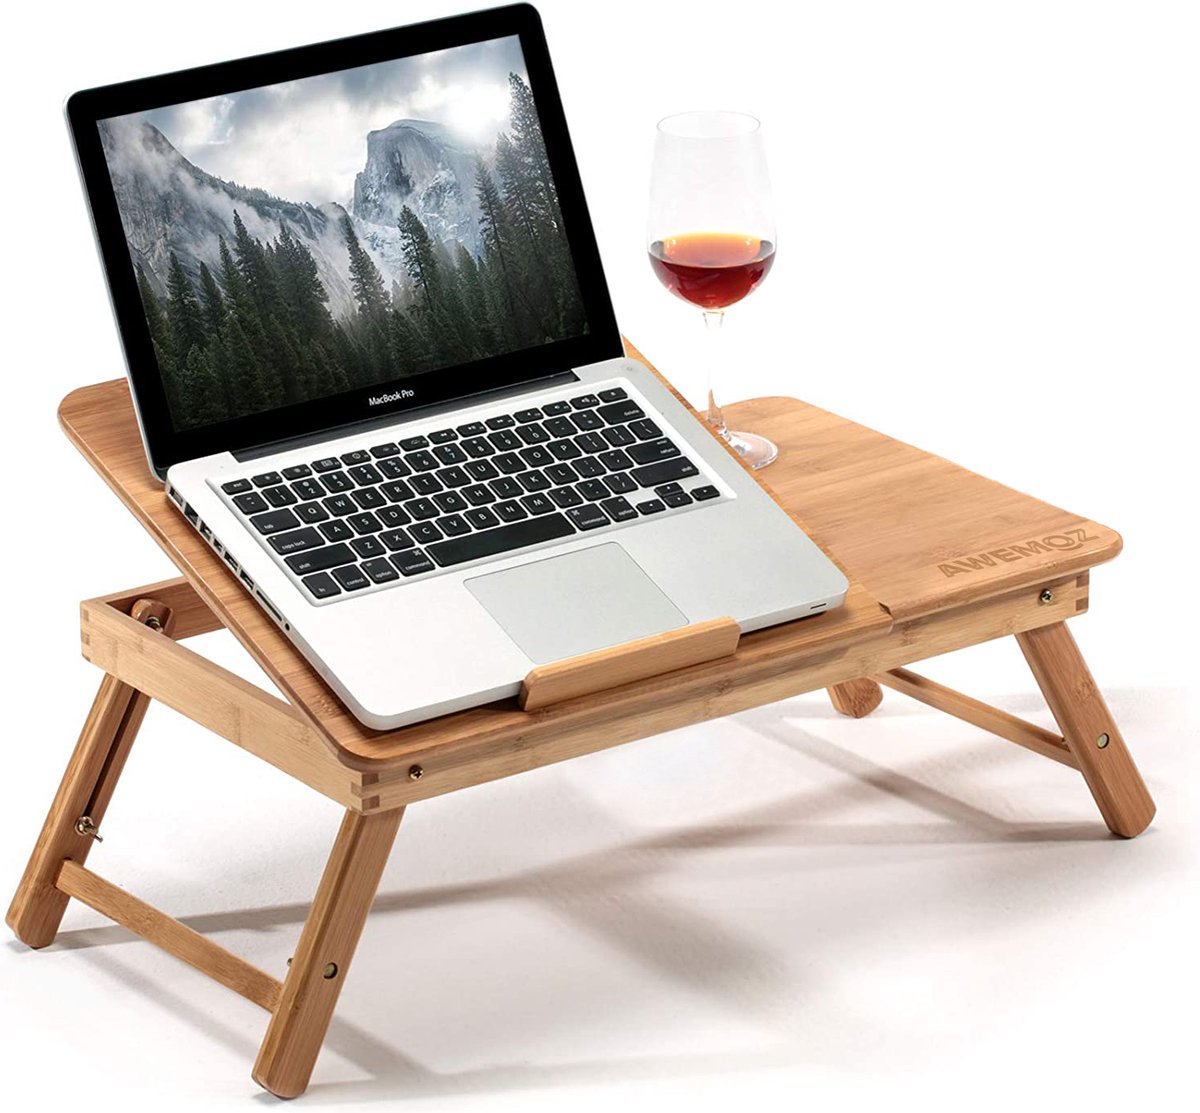 AWEMOZ Laptoptafel - Laptop Standaard - Laptoptafel Verstelbaar - Bamboe Hout - Bedtafel - Laptopstandaard - Computertafel - Klaptafel - Laptop Verhoger - Bijzettafel - L - Cadeau voor Mannen en Vrouwen - AWEMOZ